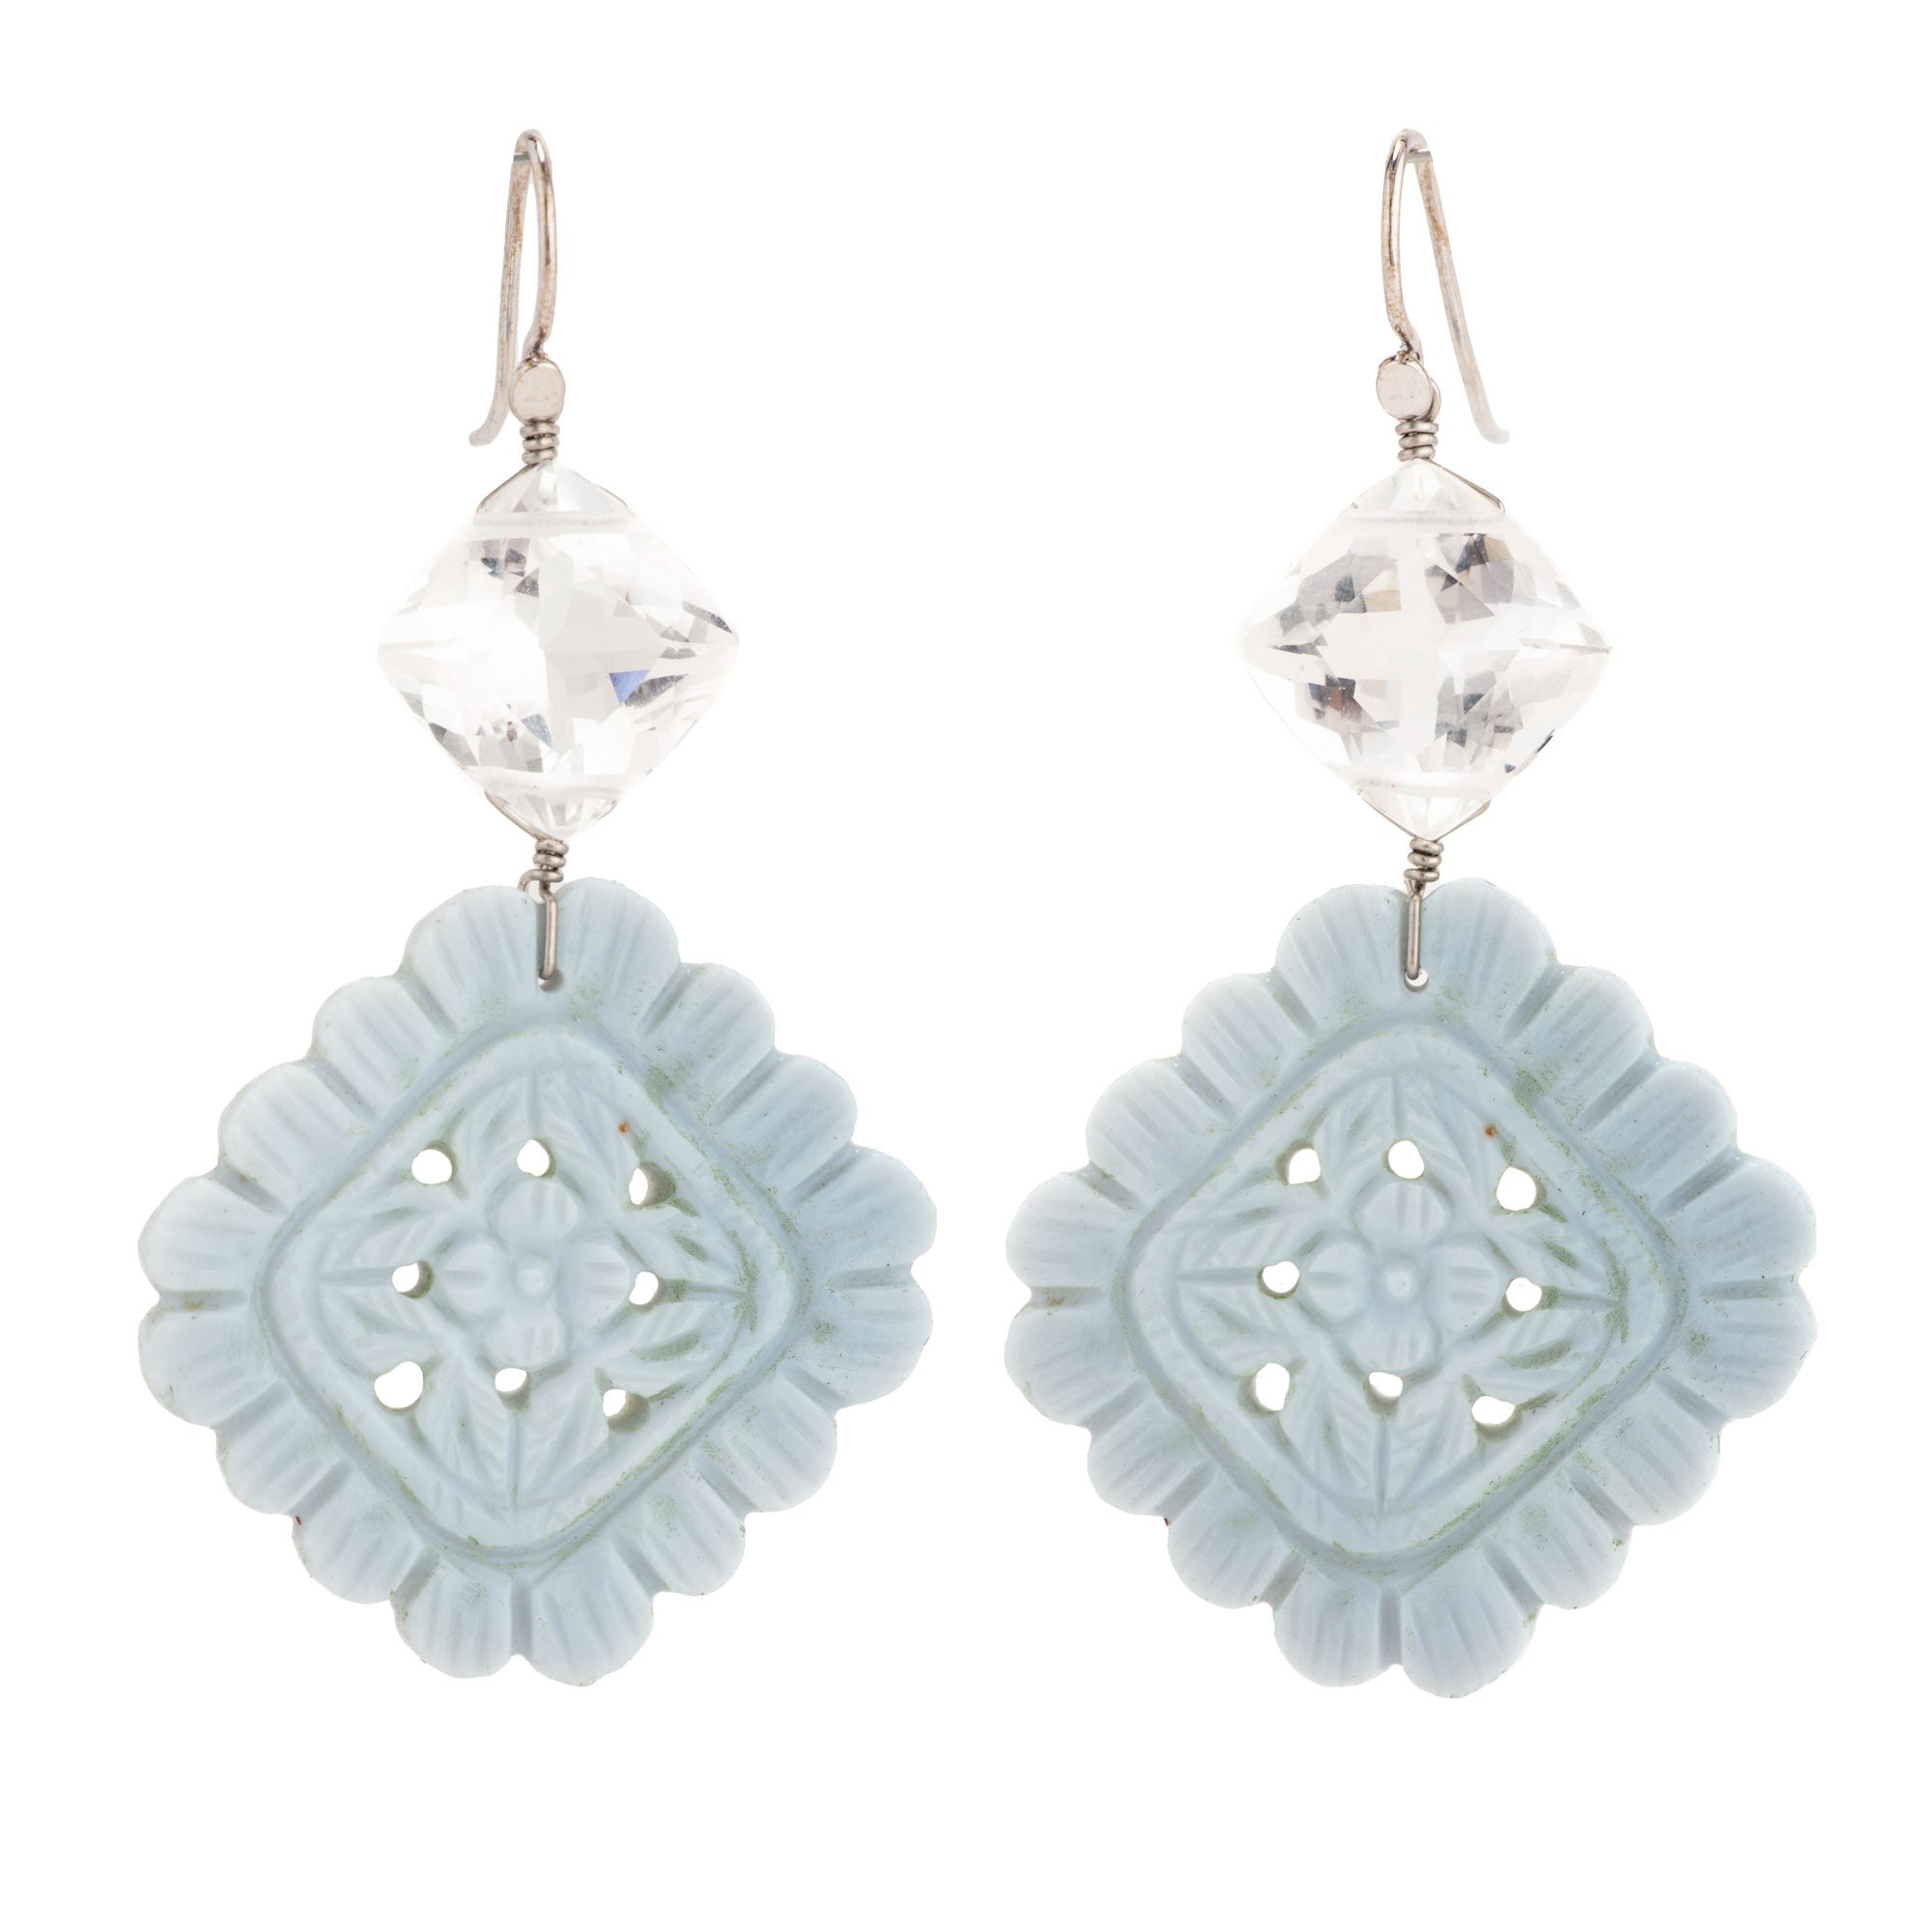 Floral ii opal and goshenite earrings